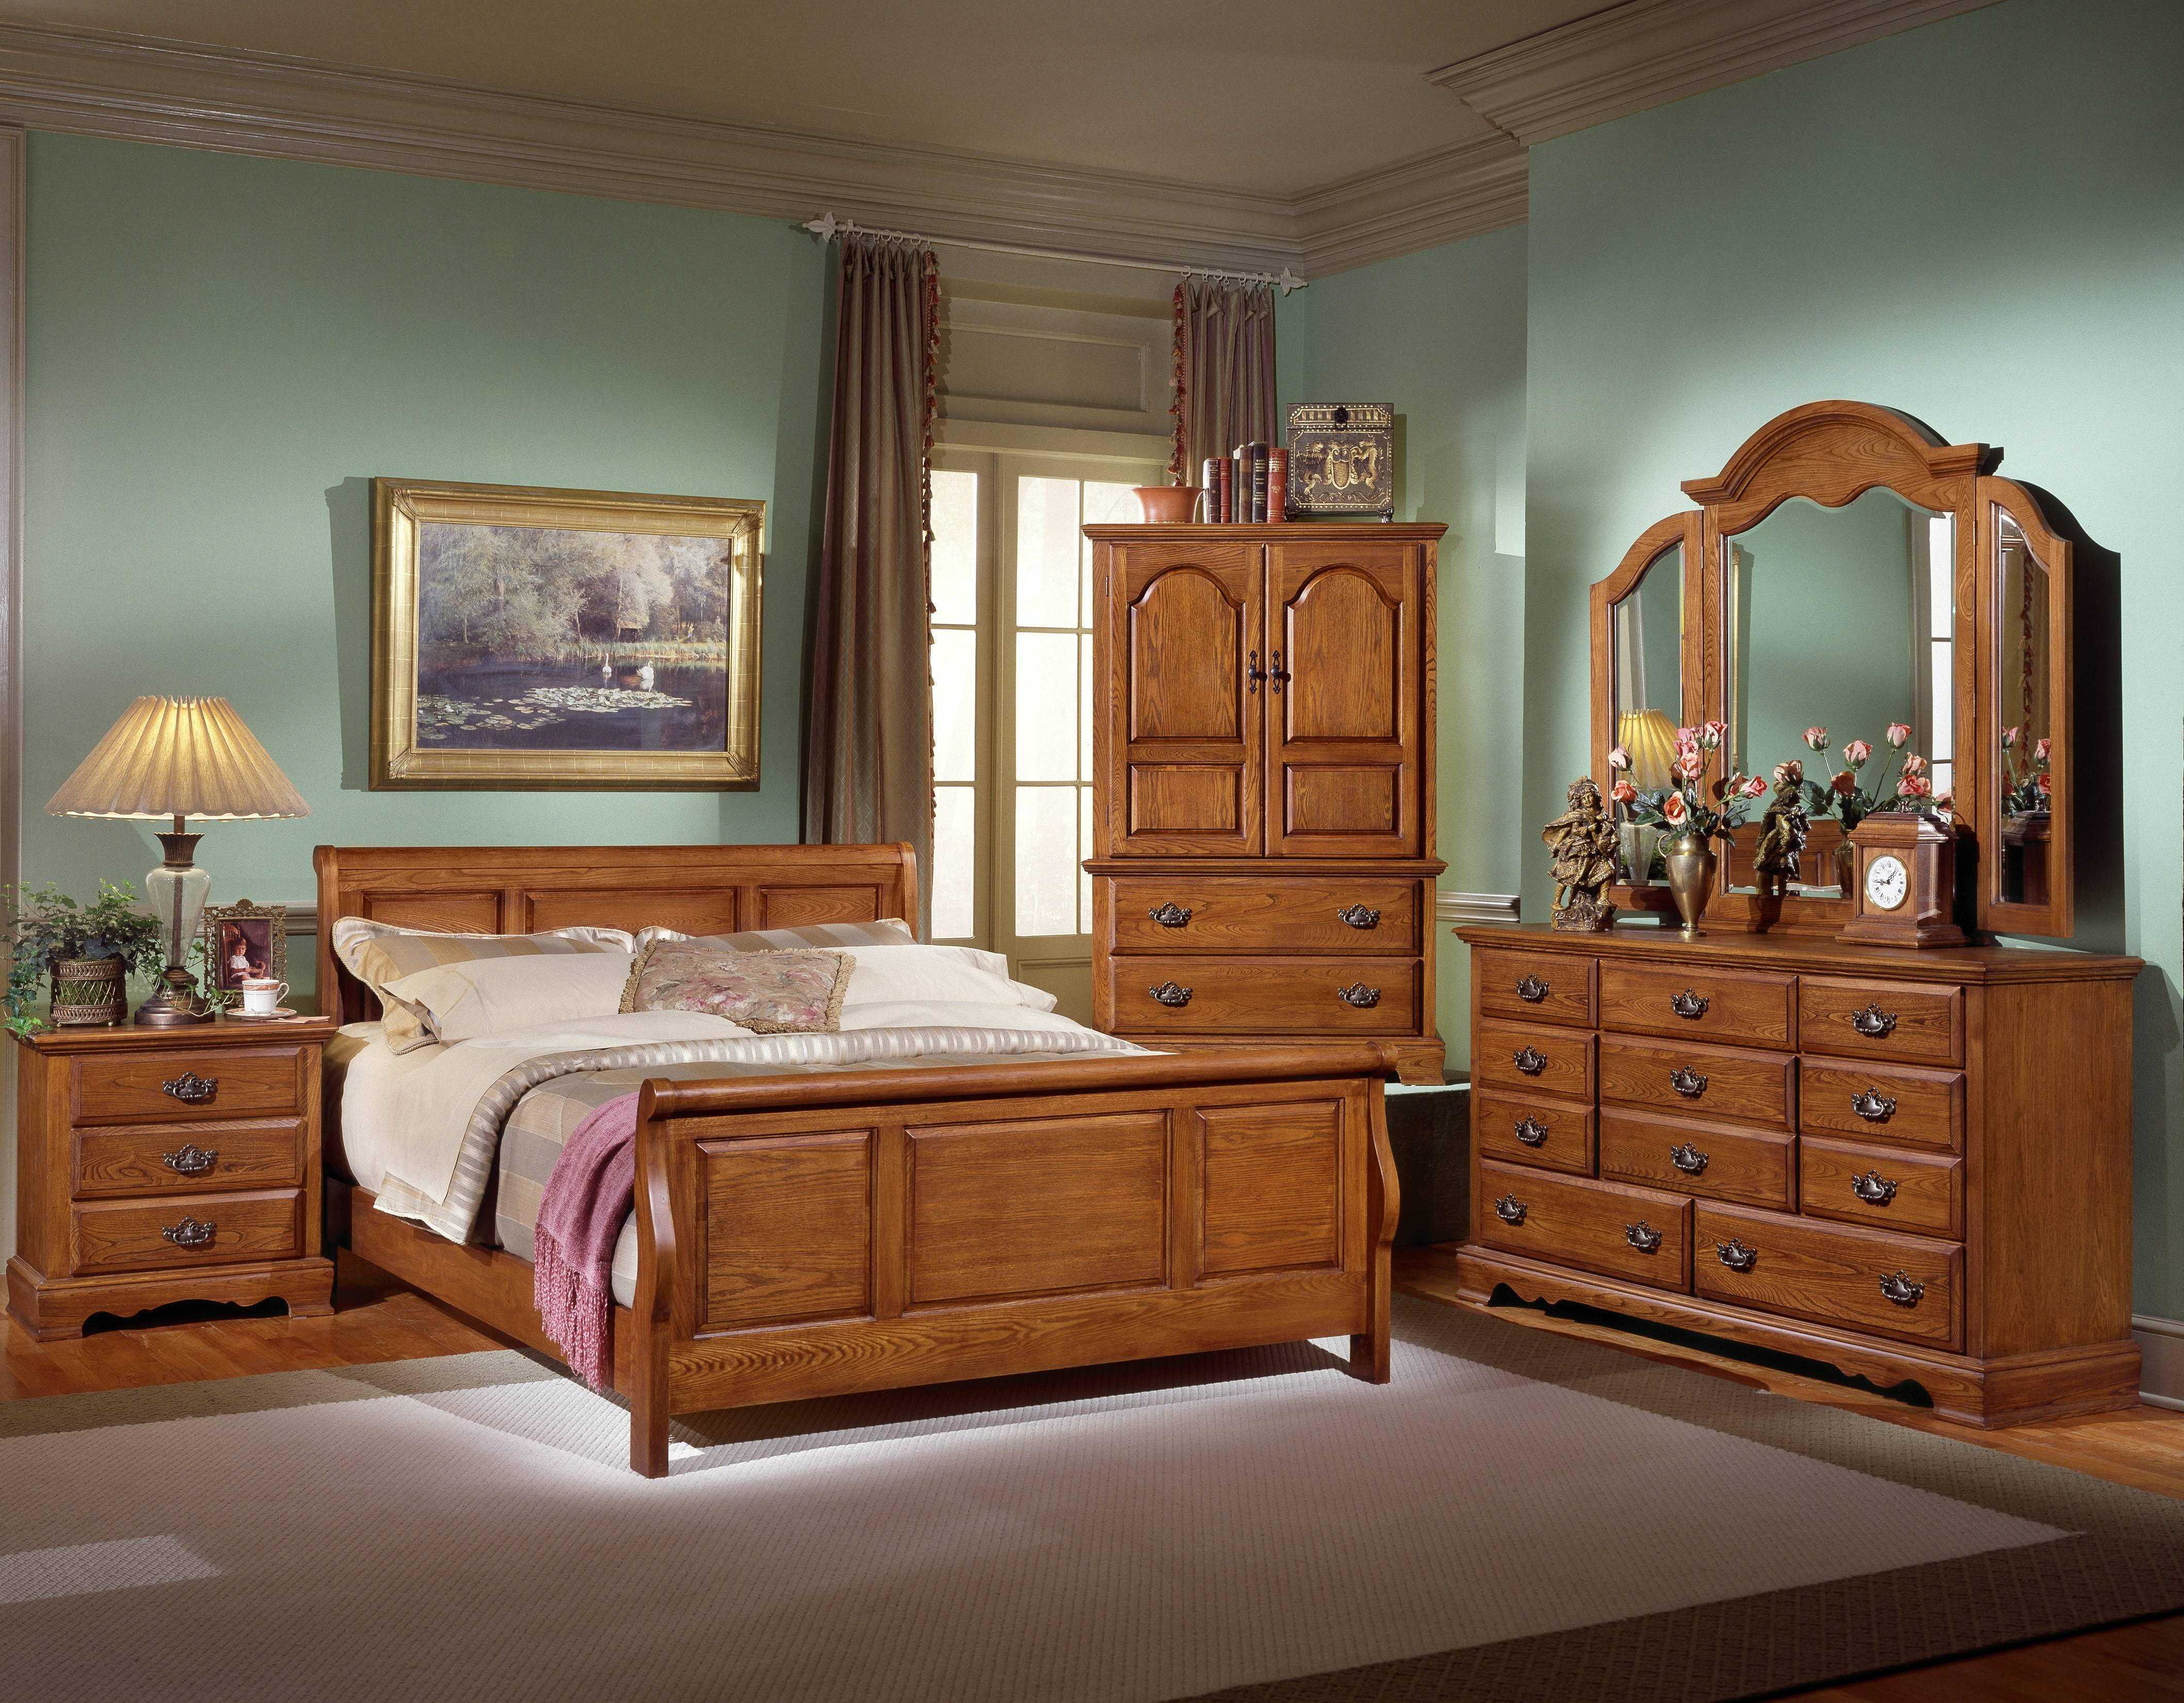 Какая есть мебель. Спальня из натурального дерева. Красивая деревянная мебель. Спальни из массива дерева. Комната с деревянной мебелью.